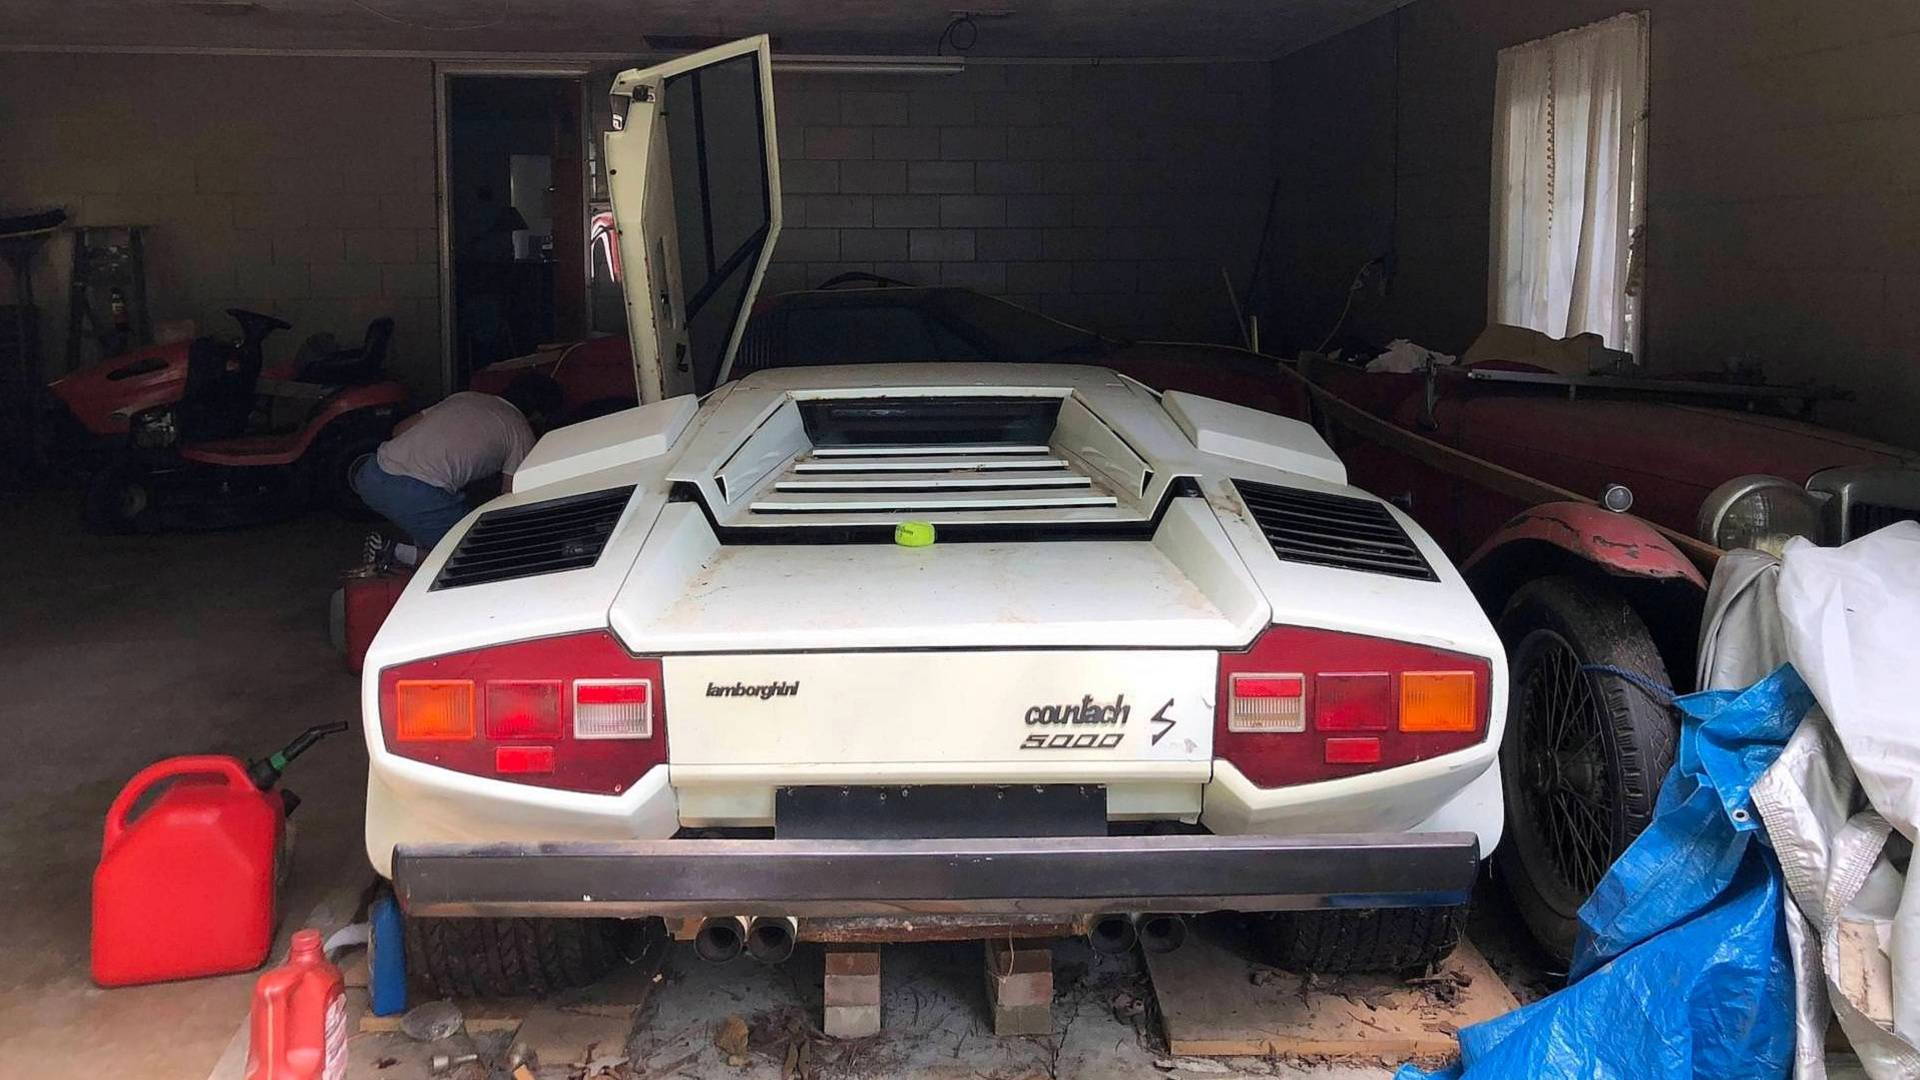 Grandma's 1981 Lamborghini Countach is still cool even covered in dust